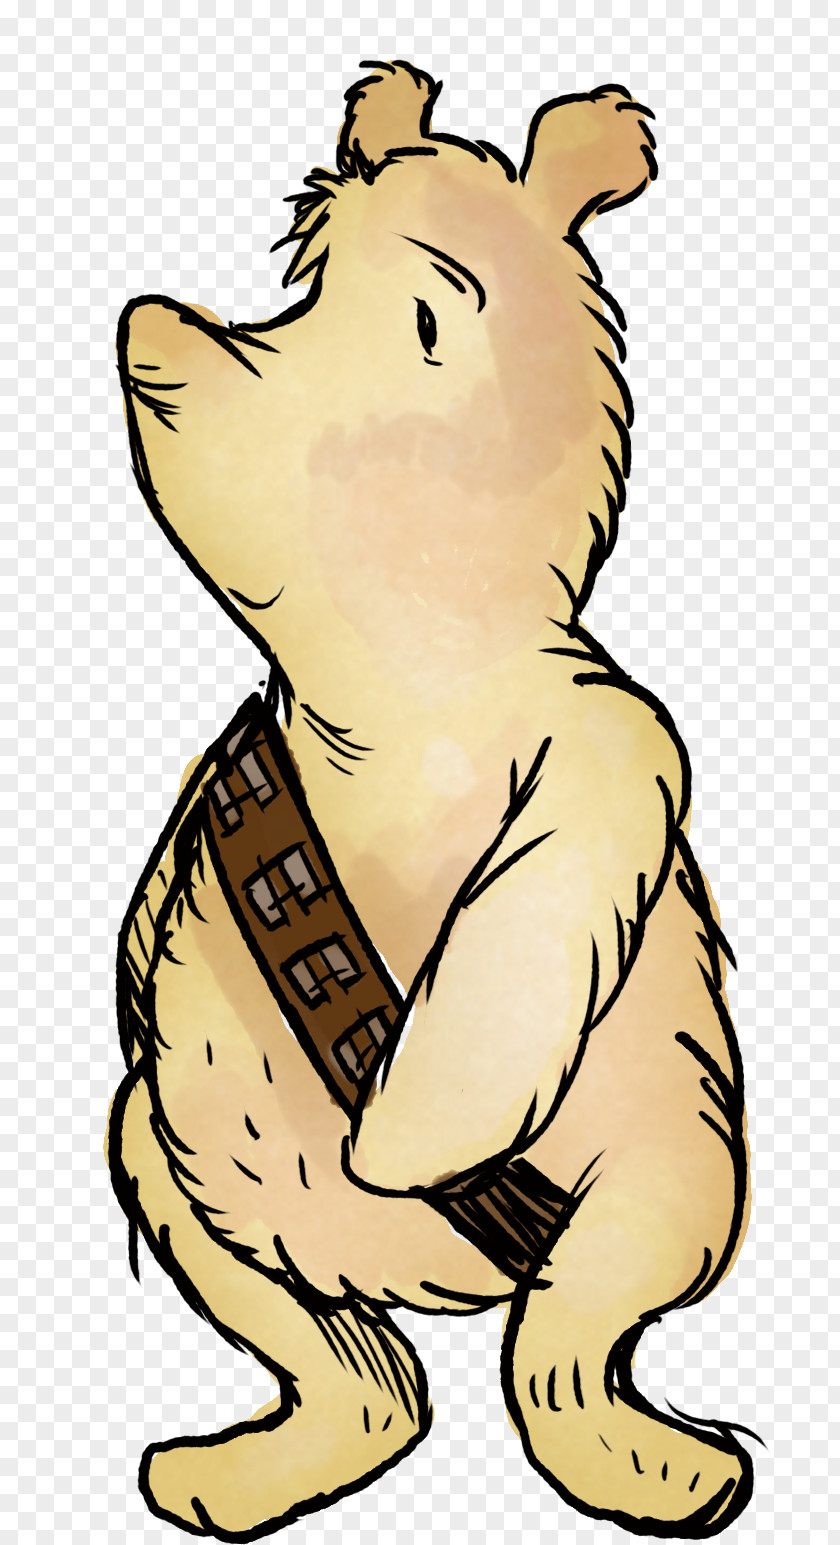 Pooh Dog Cartoon PNG